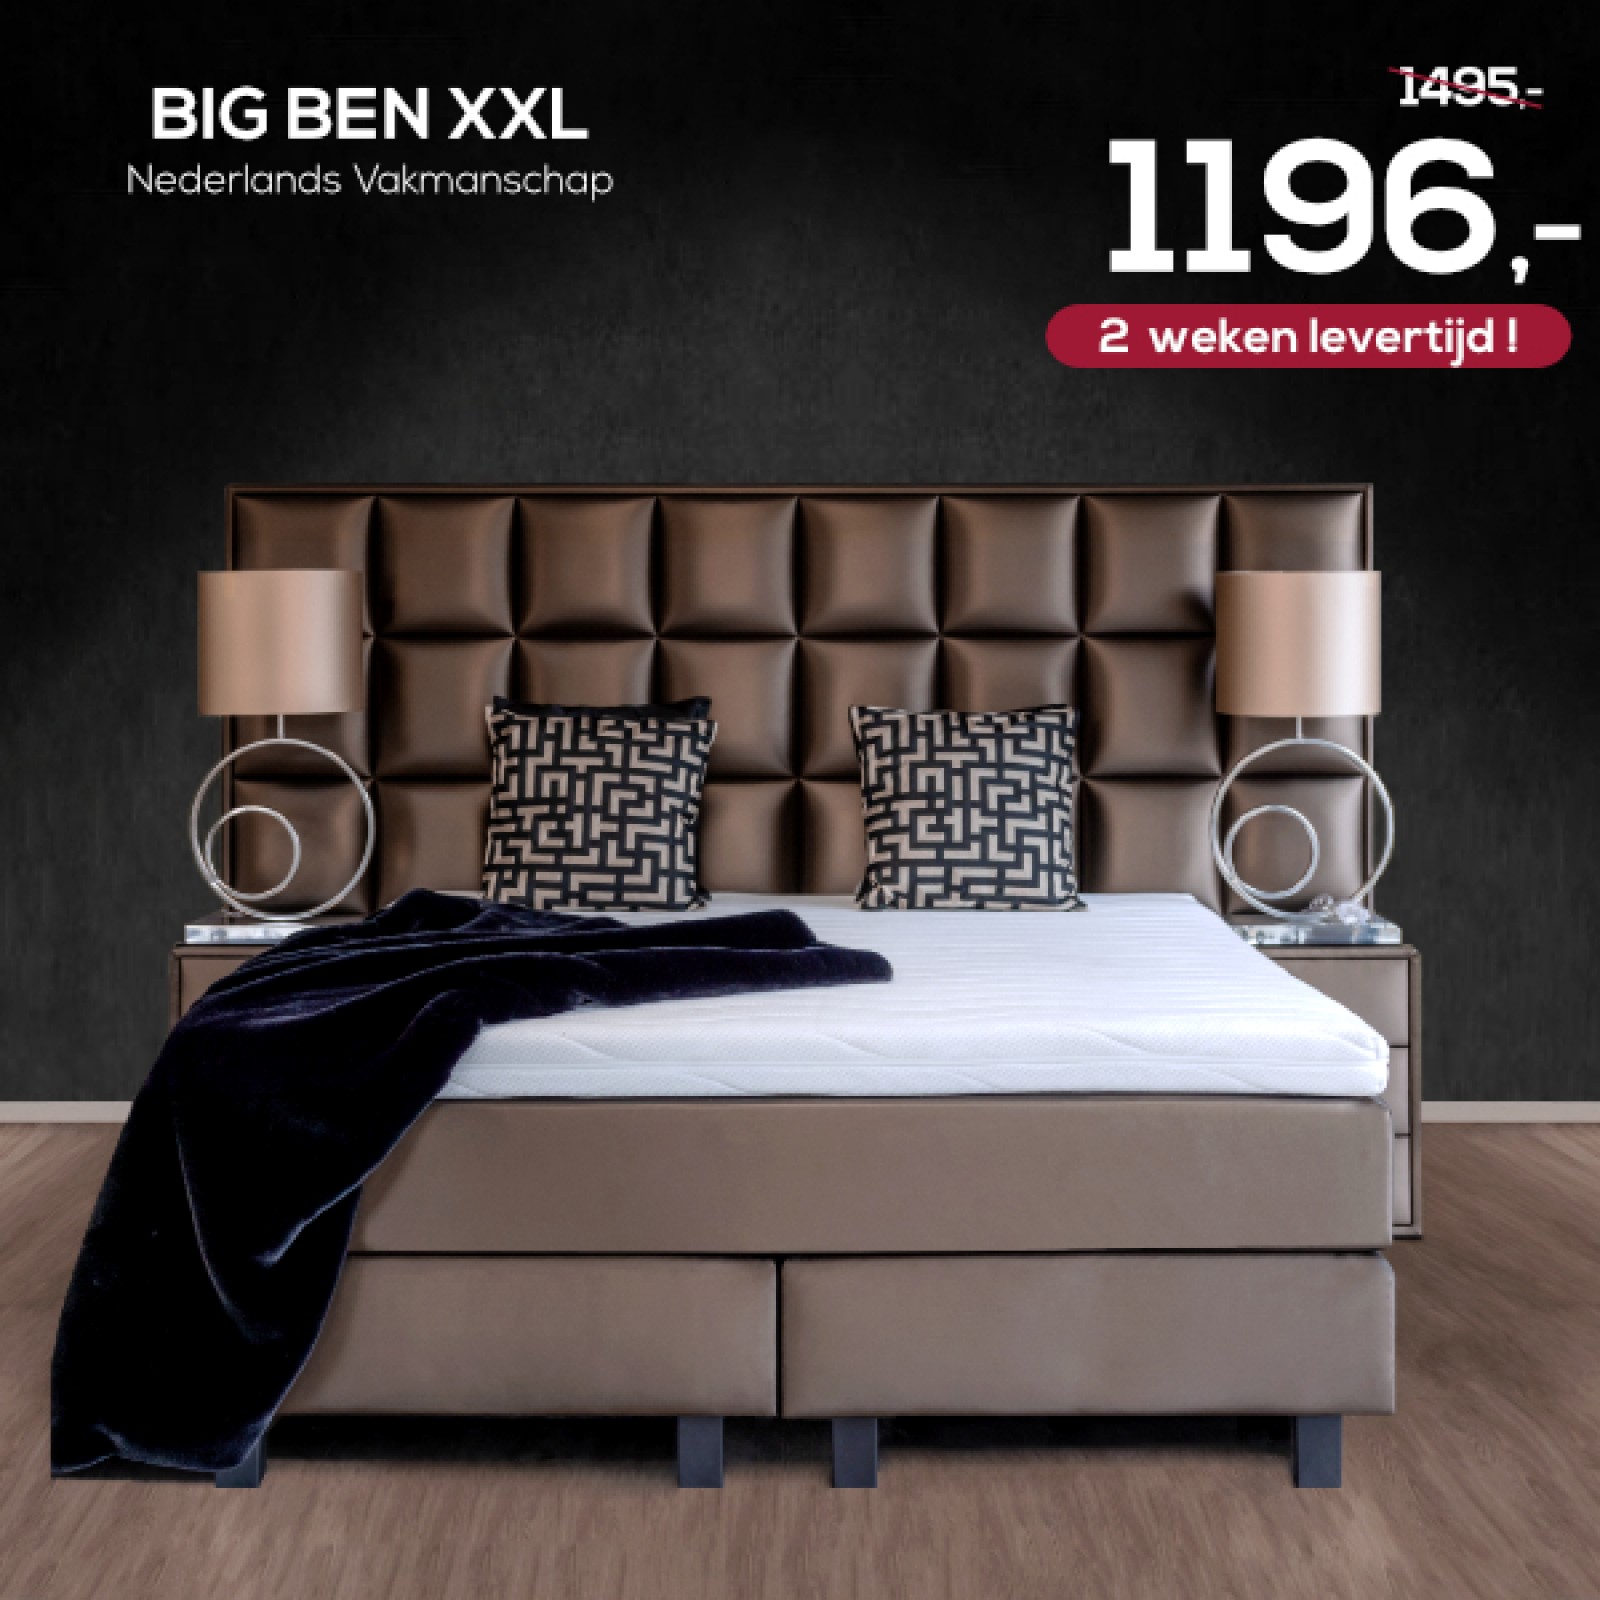 Big Ben XXL